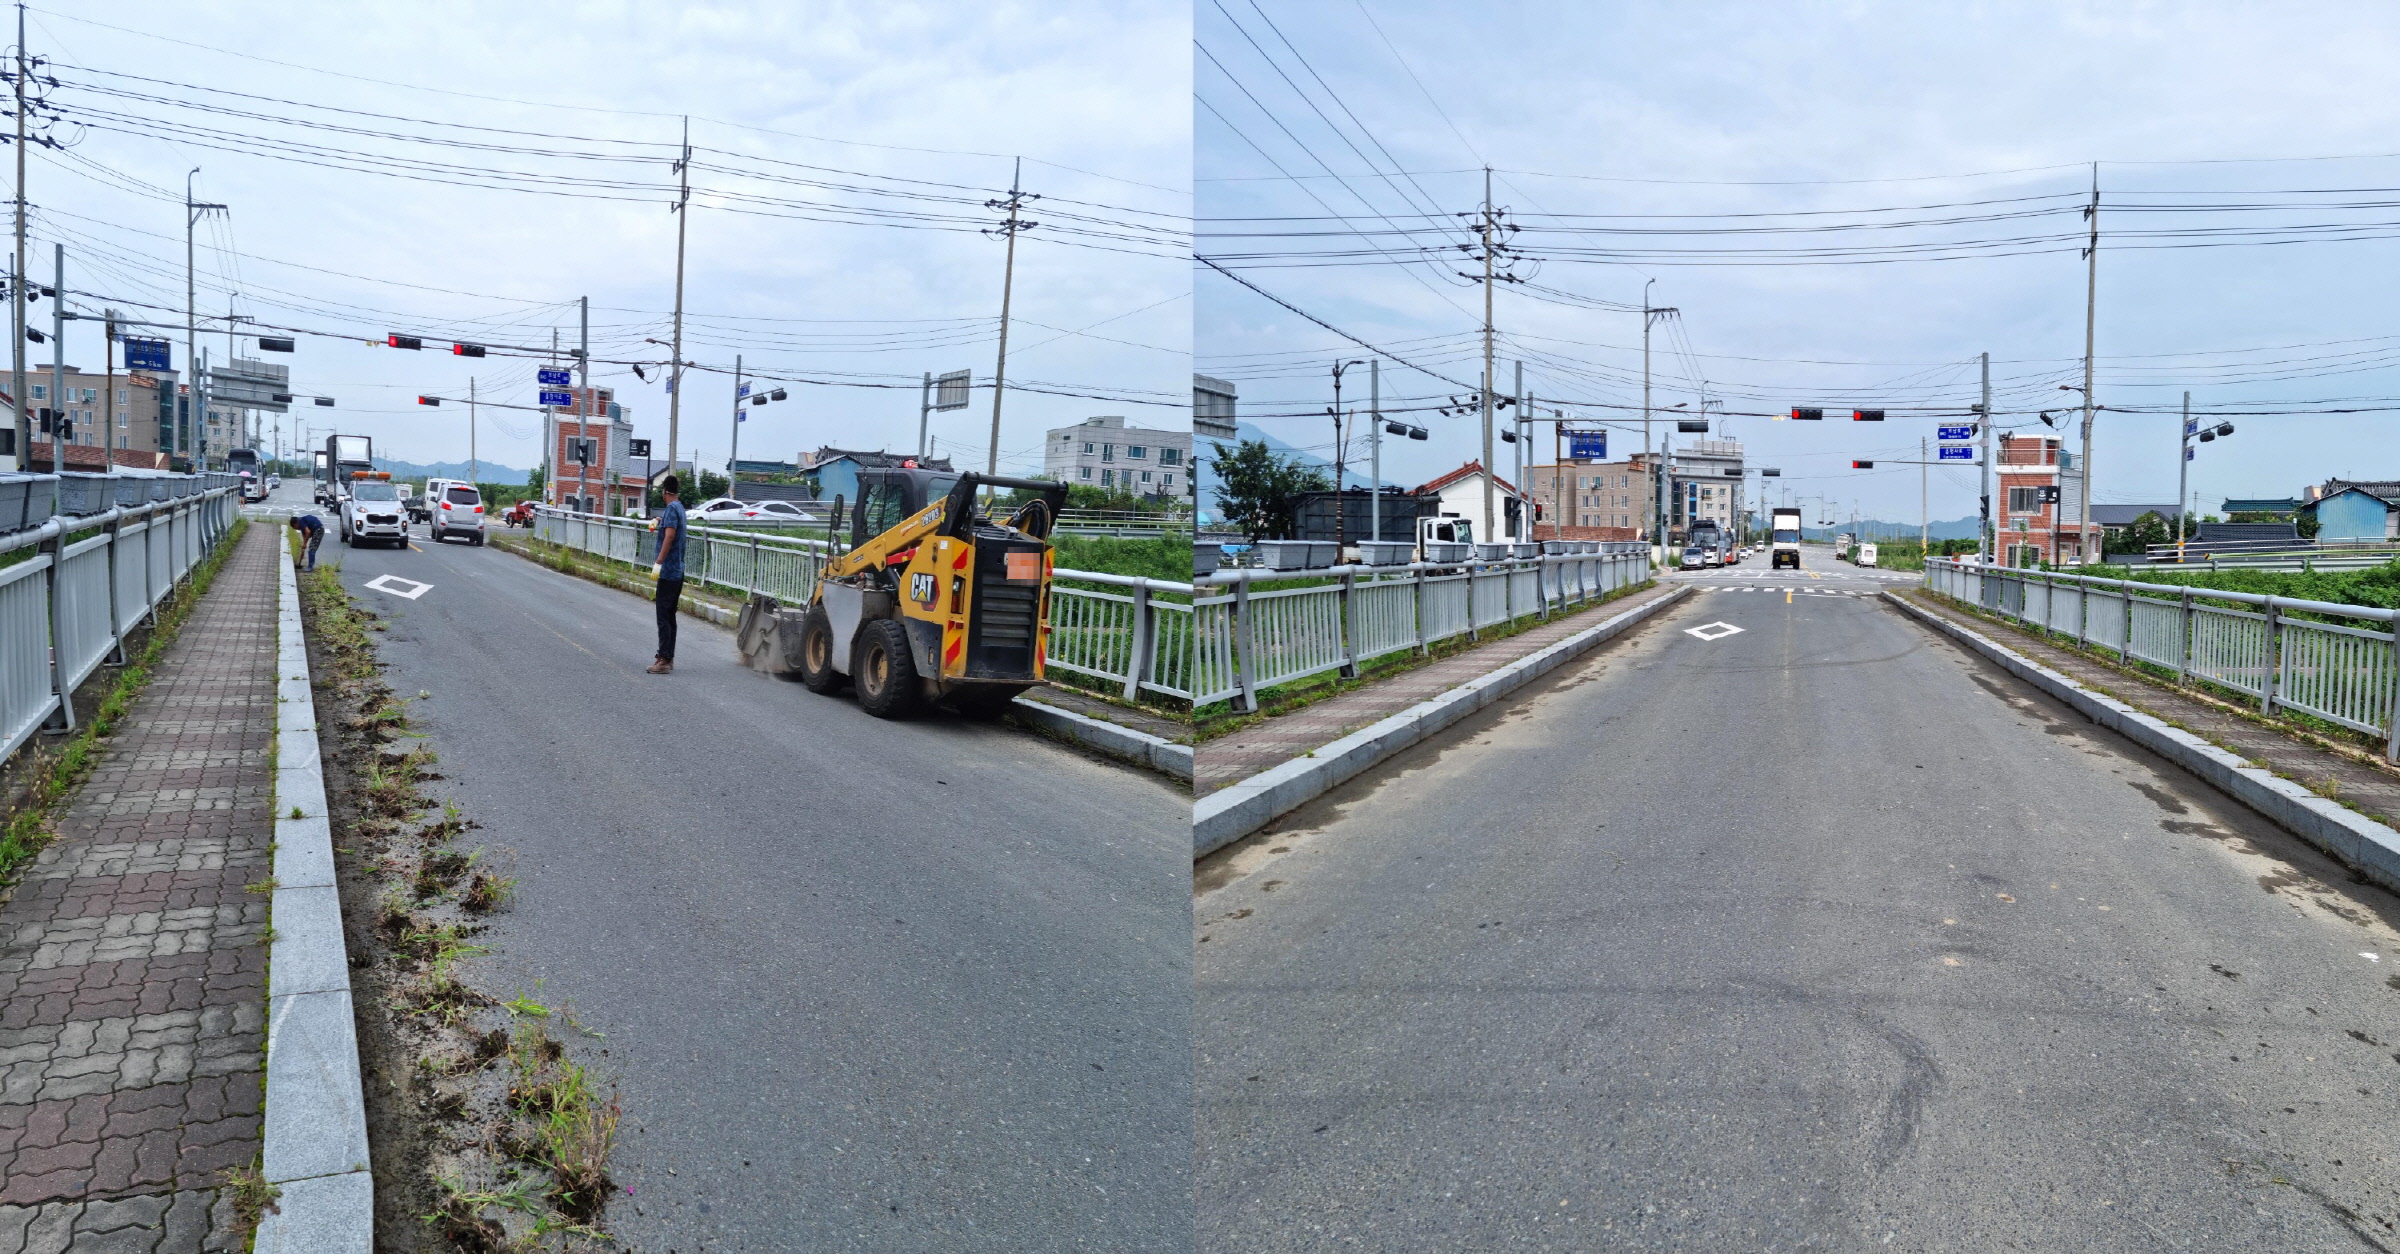 외동읍에서 도로변 환경정비를 실시한 모습(전, 후 합친 사진)